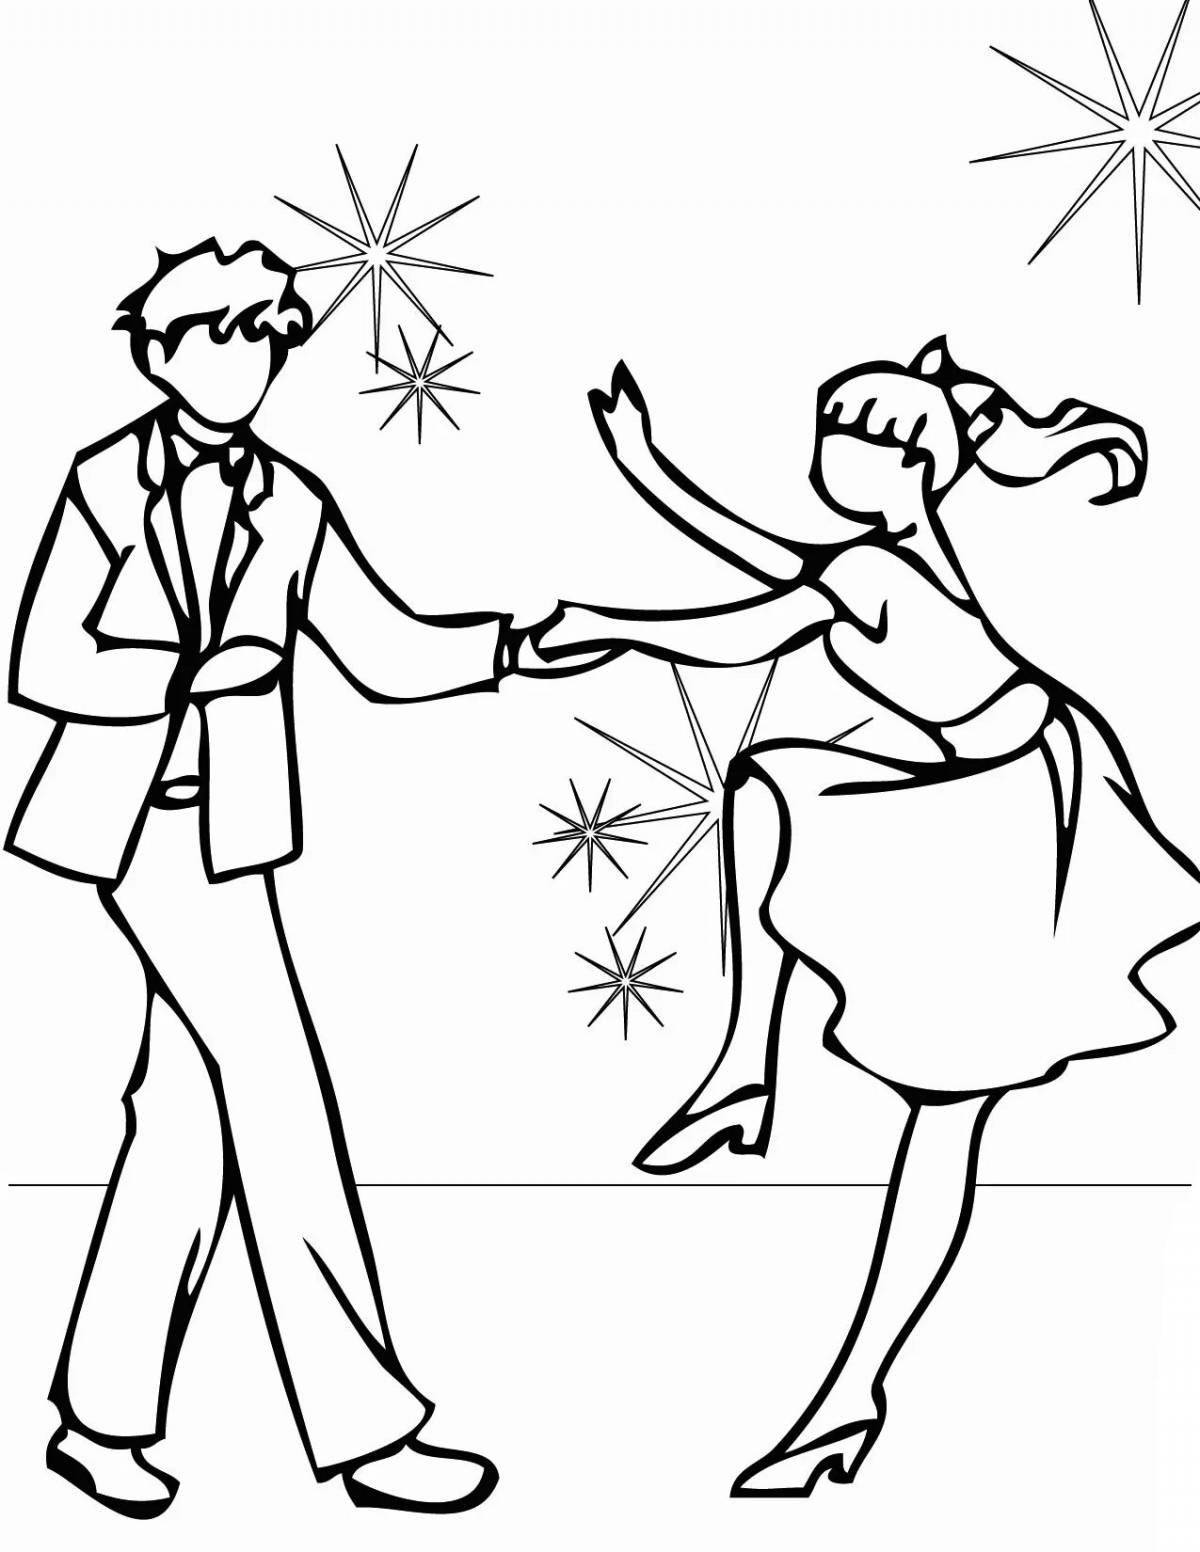 Elegant poses for ballroom dancing